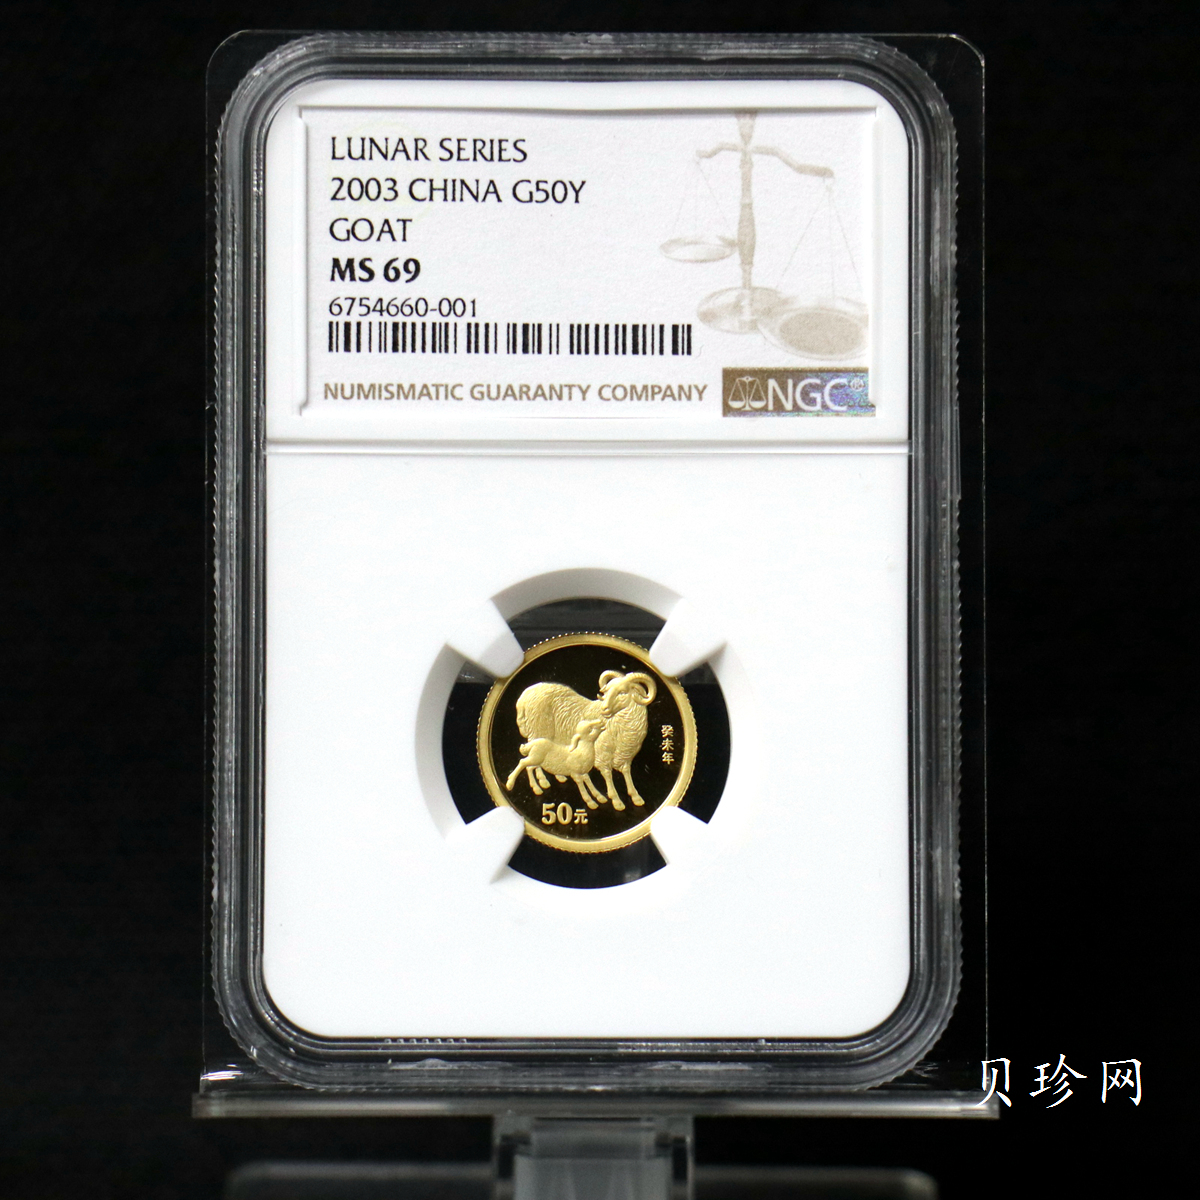 【030206】2003中国癸未（羊）年金纪念币-双羊1/10盎司普制金币